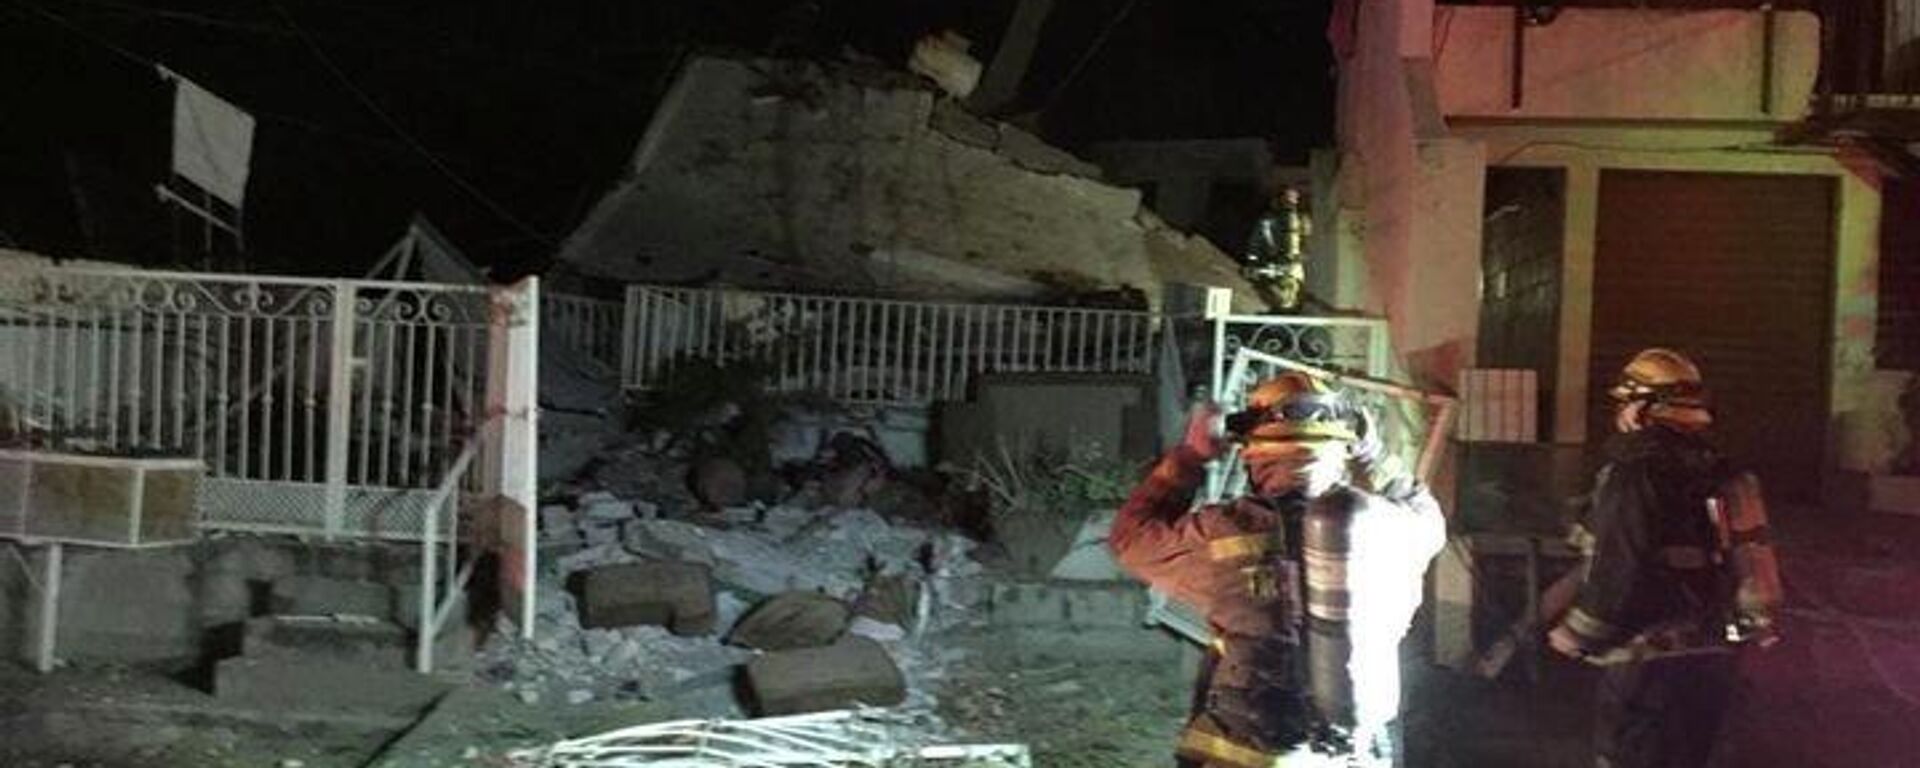 Explosión destruye casa en la ciudad mexicana de Culiacán - Sputnik Mundo, 1920, 11.02.2022